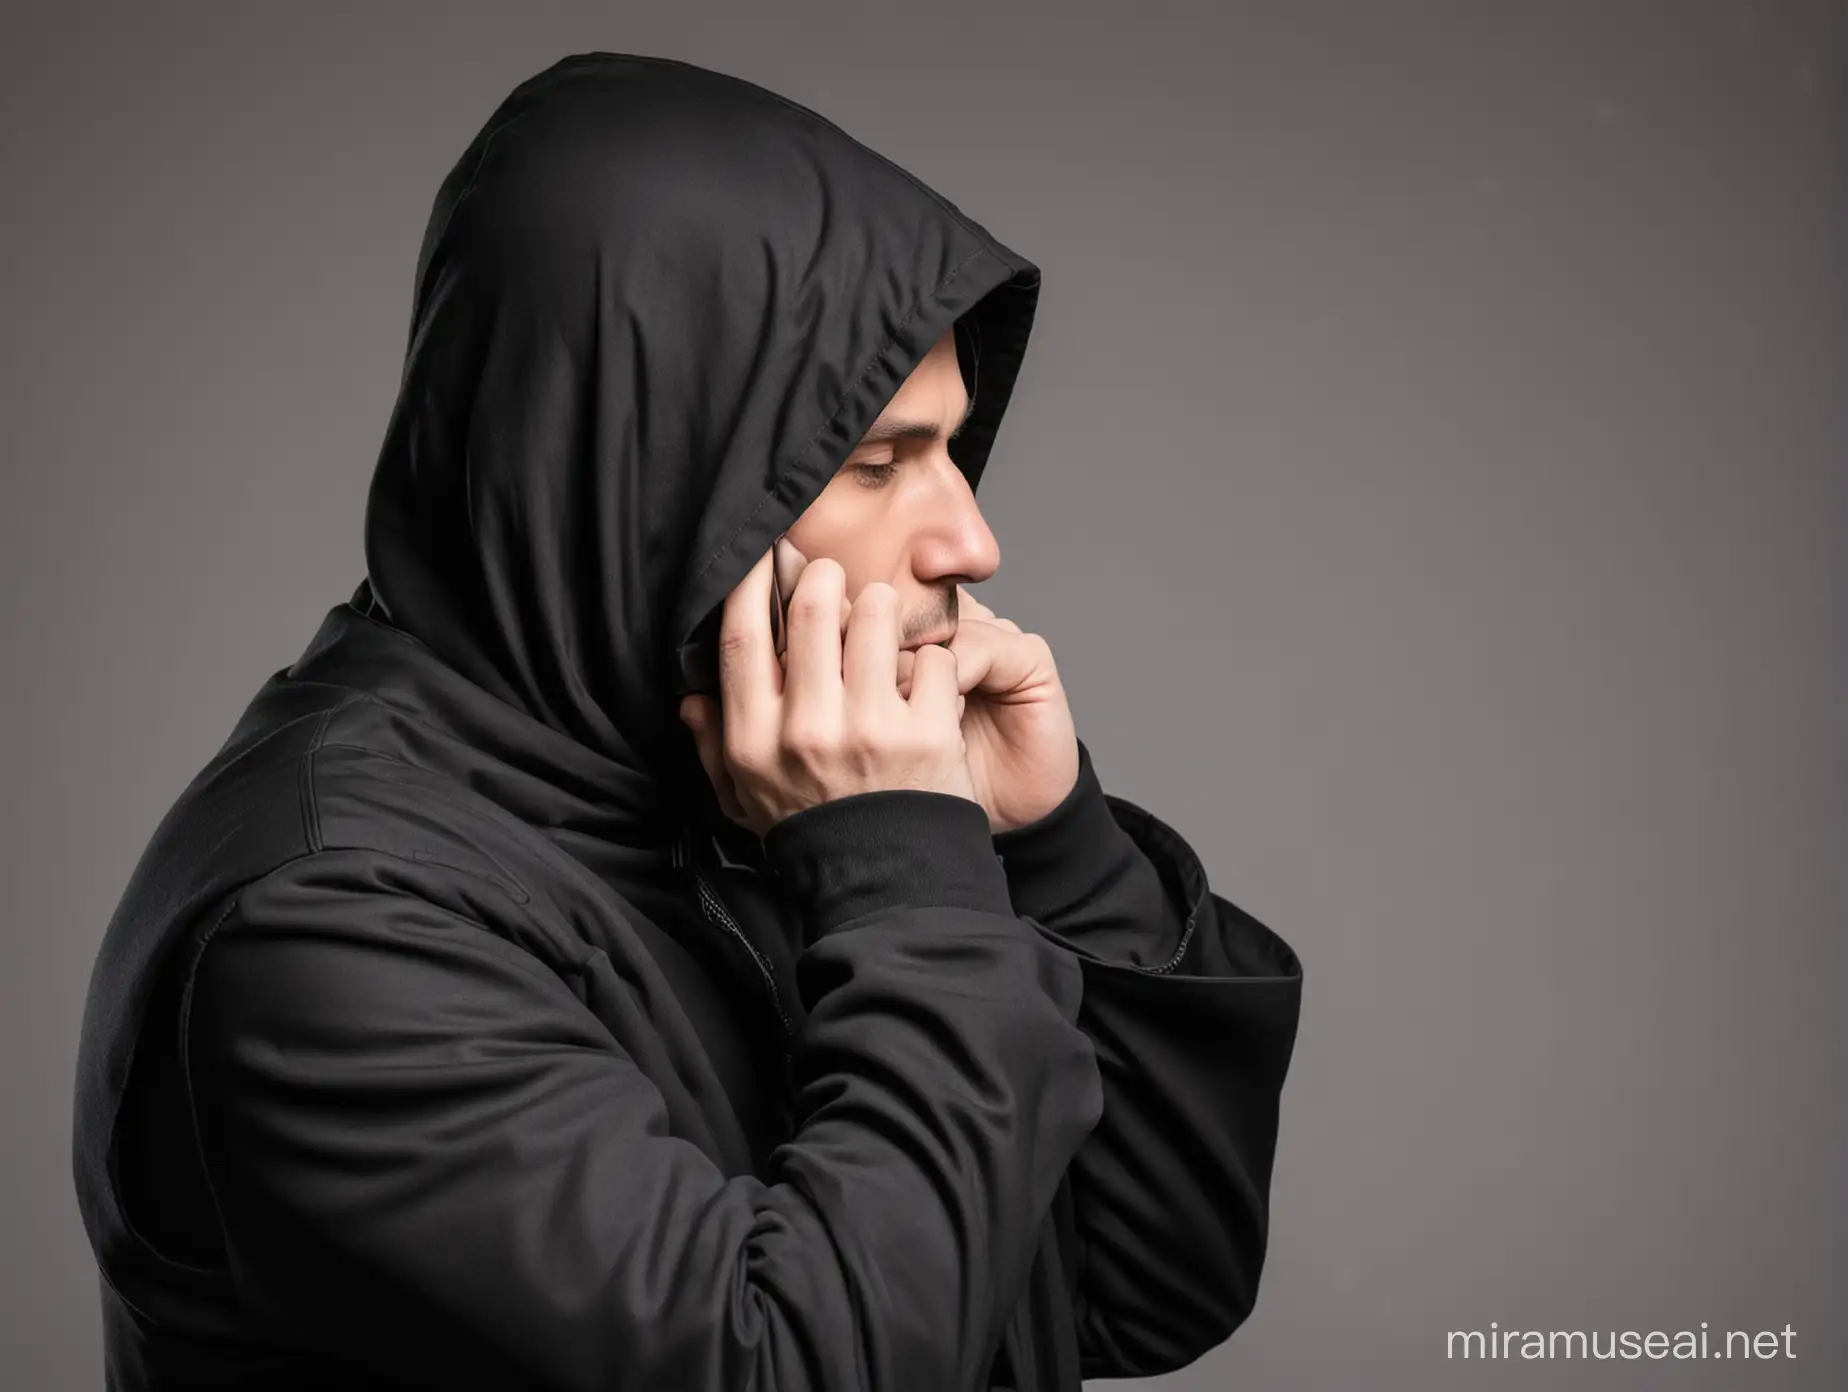 Mysterious Figure in Black Hood Speaking on Phone